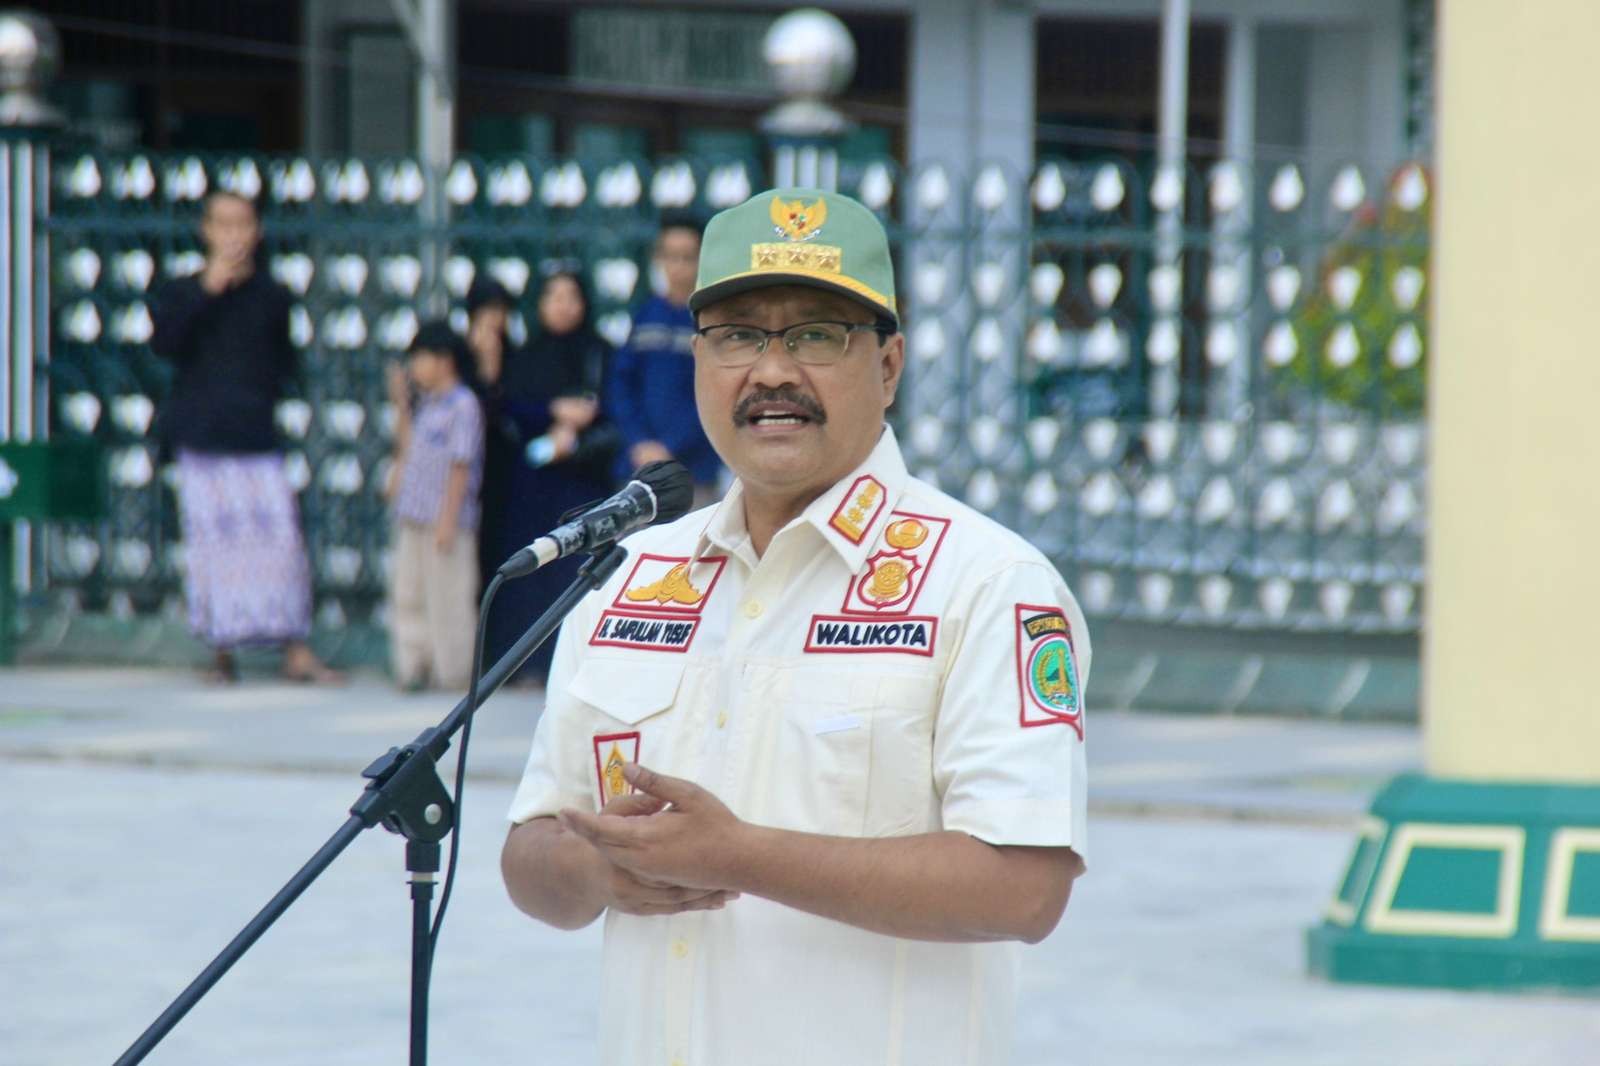 Walikota Pasuruan Saifullah Yusuf atau Gus Ipul memimpin apel di alun-alun, terkait ketertiban wilayah agar tercipa Pasuruan Kota Madinah, Kamis 5 Januari 2023. (Foto: Diskominfo Kota Pasuruan)